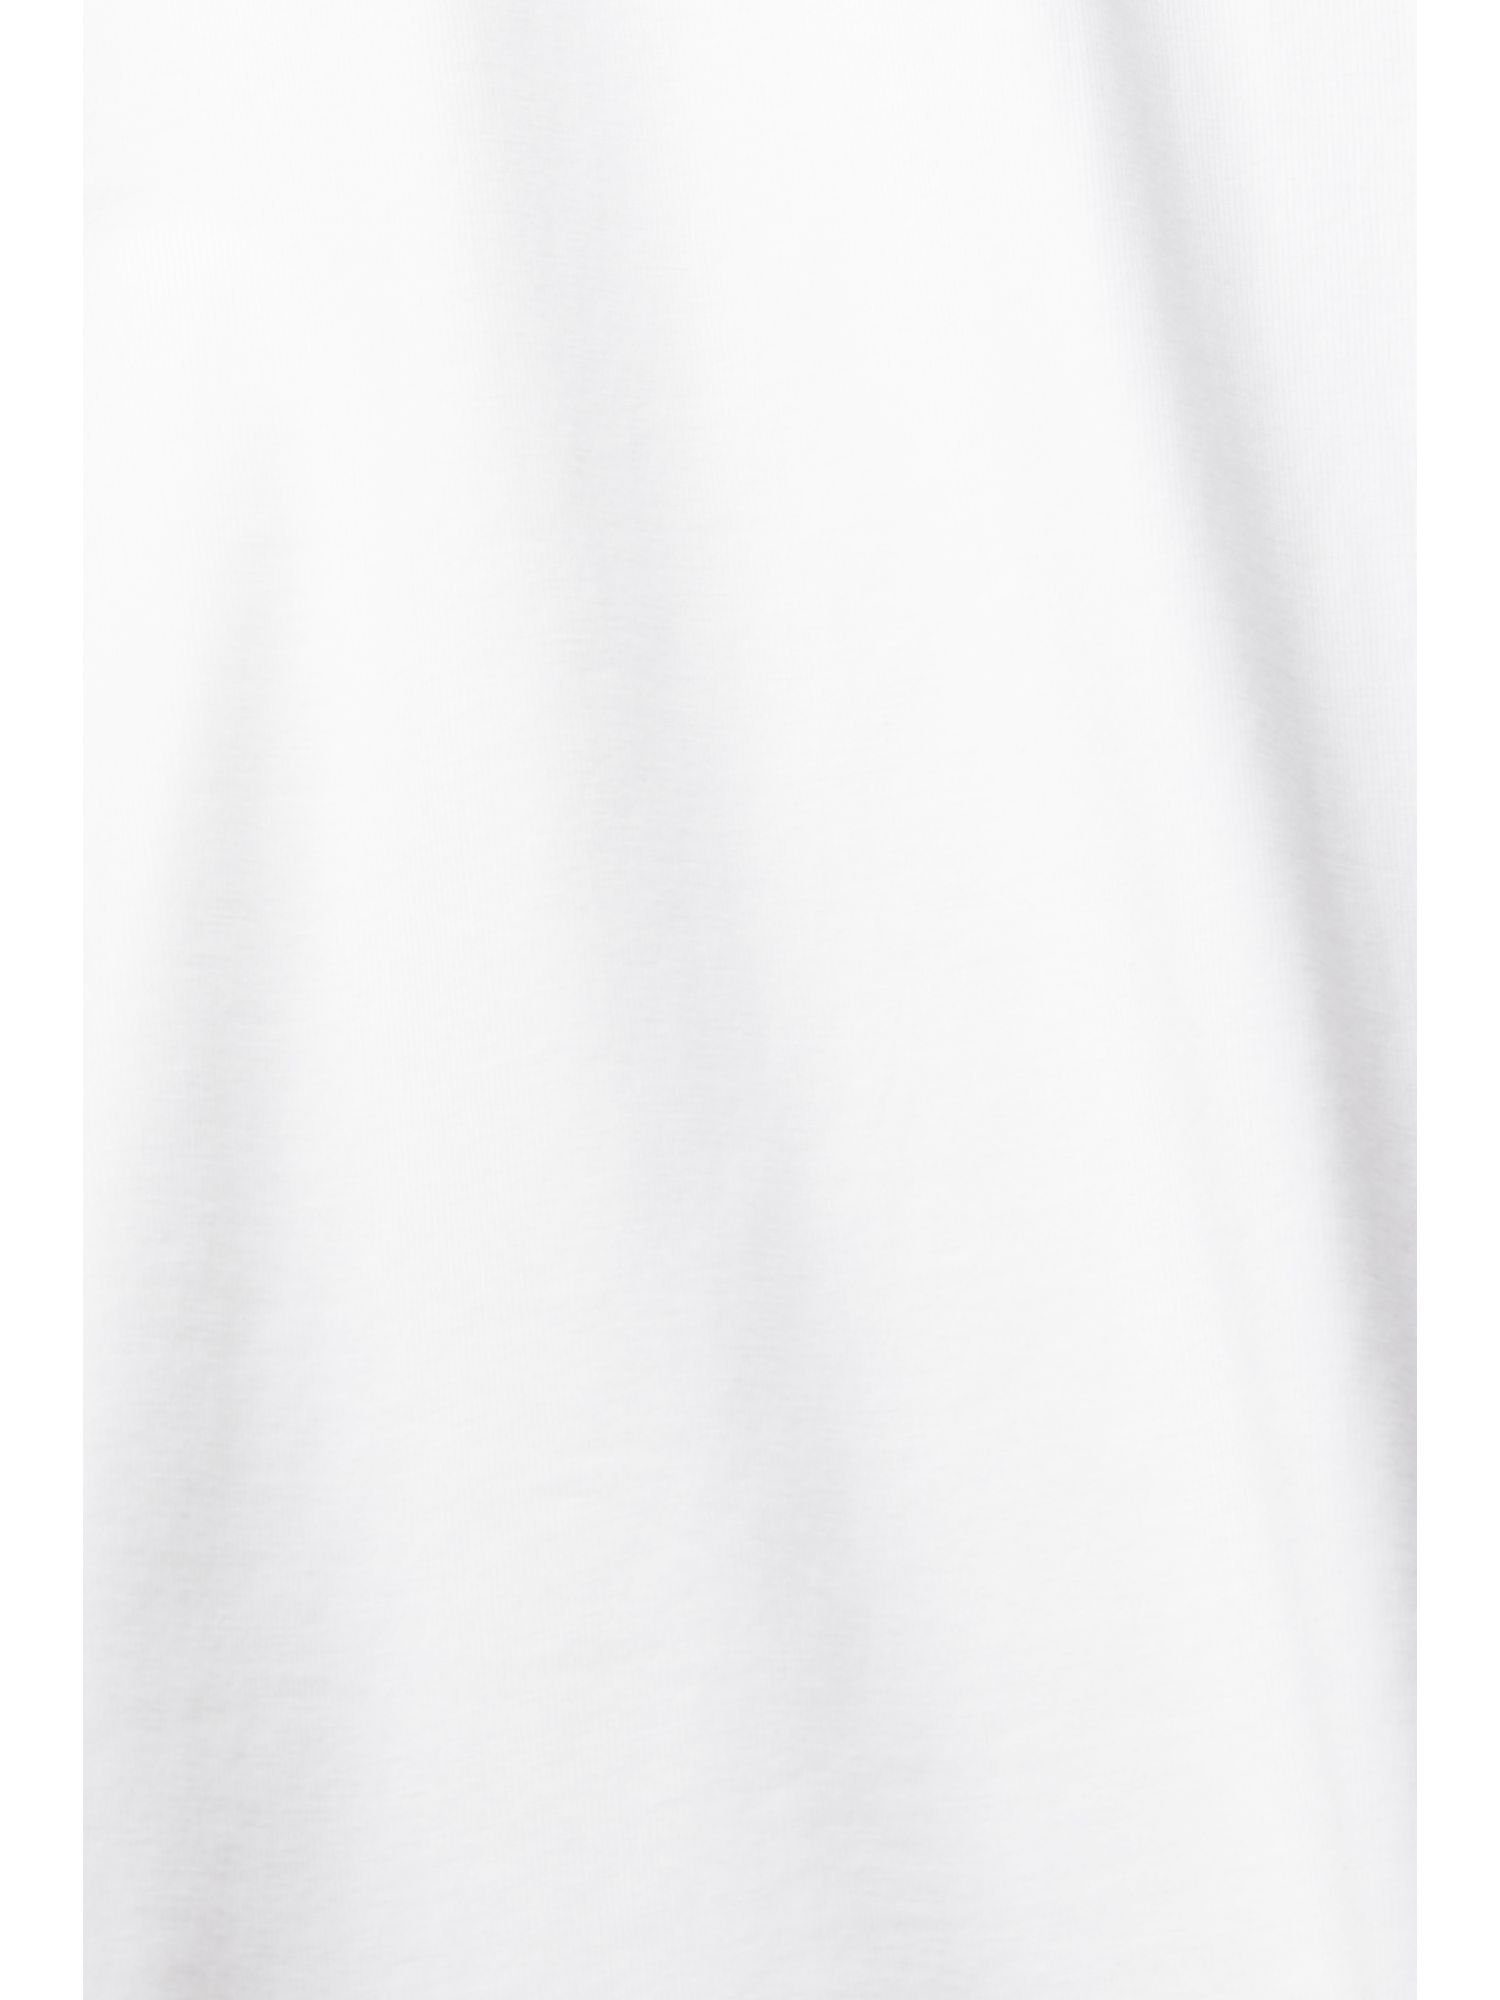 aus edc WHITE 100 % Langarmshirt Jersey, Baumwolle by Langarm-Top Esprit (1-tlg)